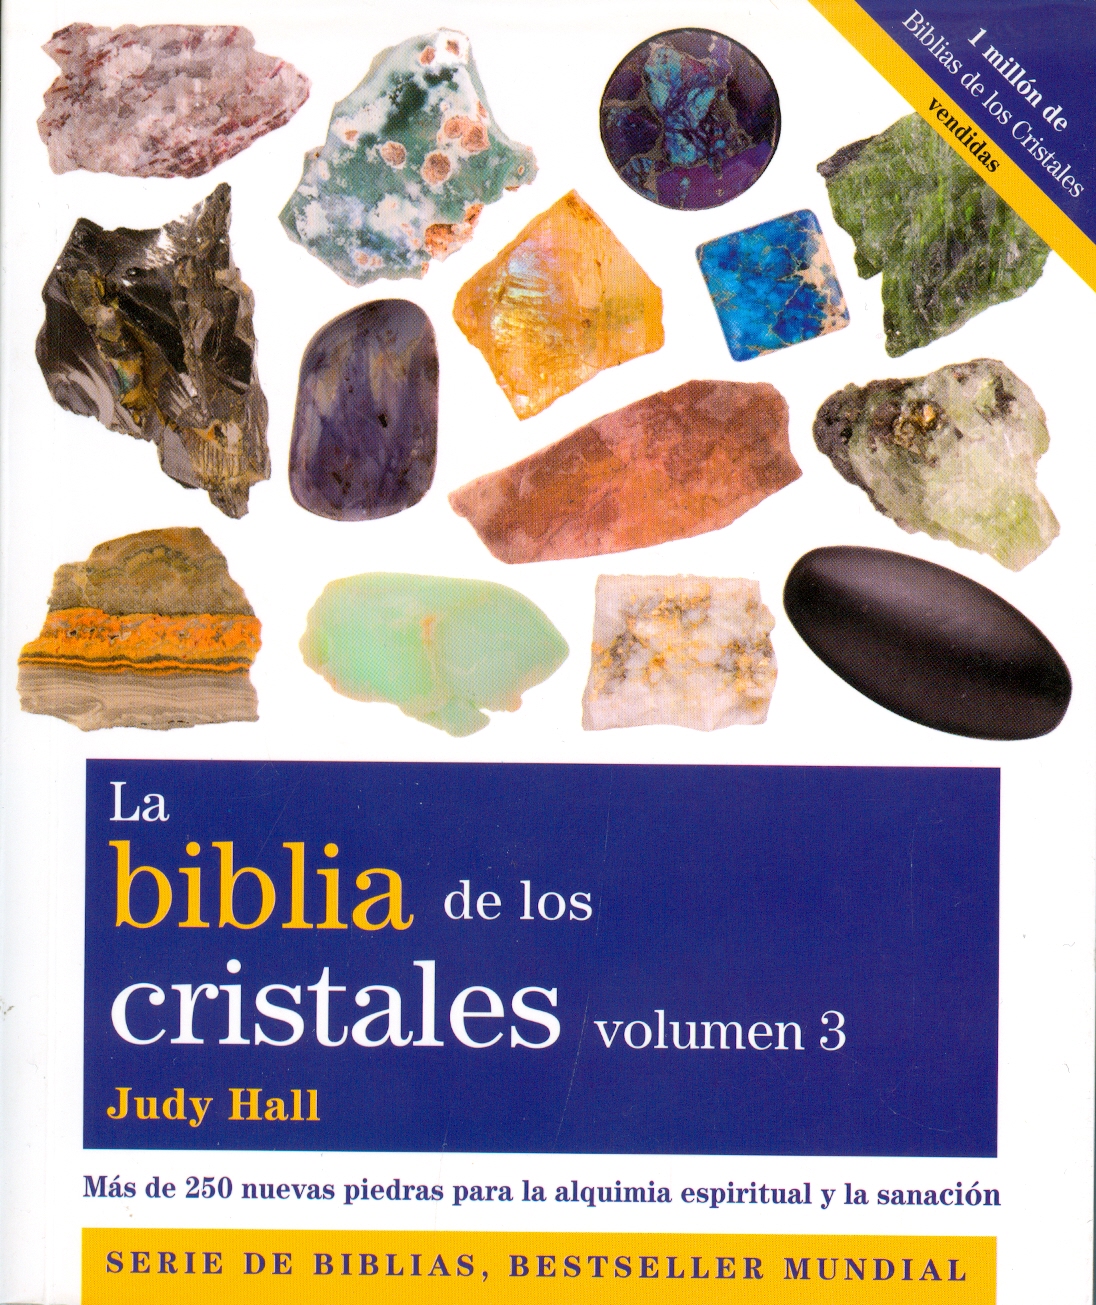 La biblia de los cristales 3